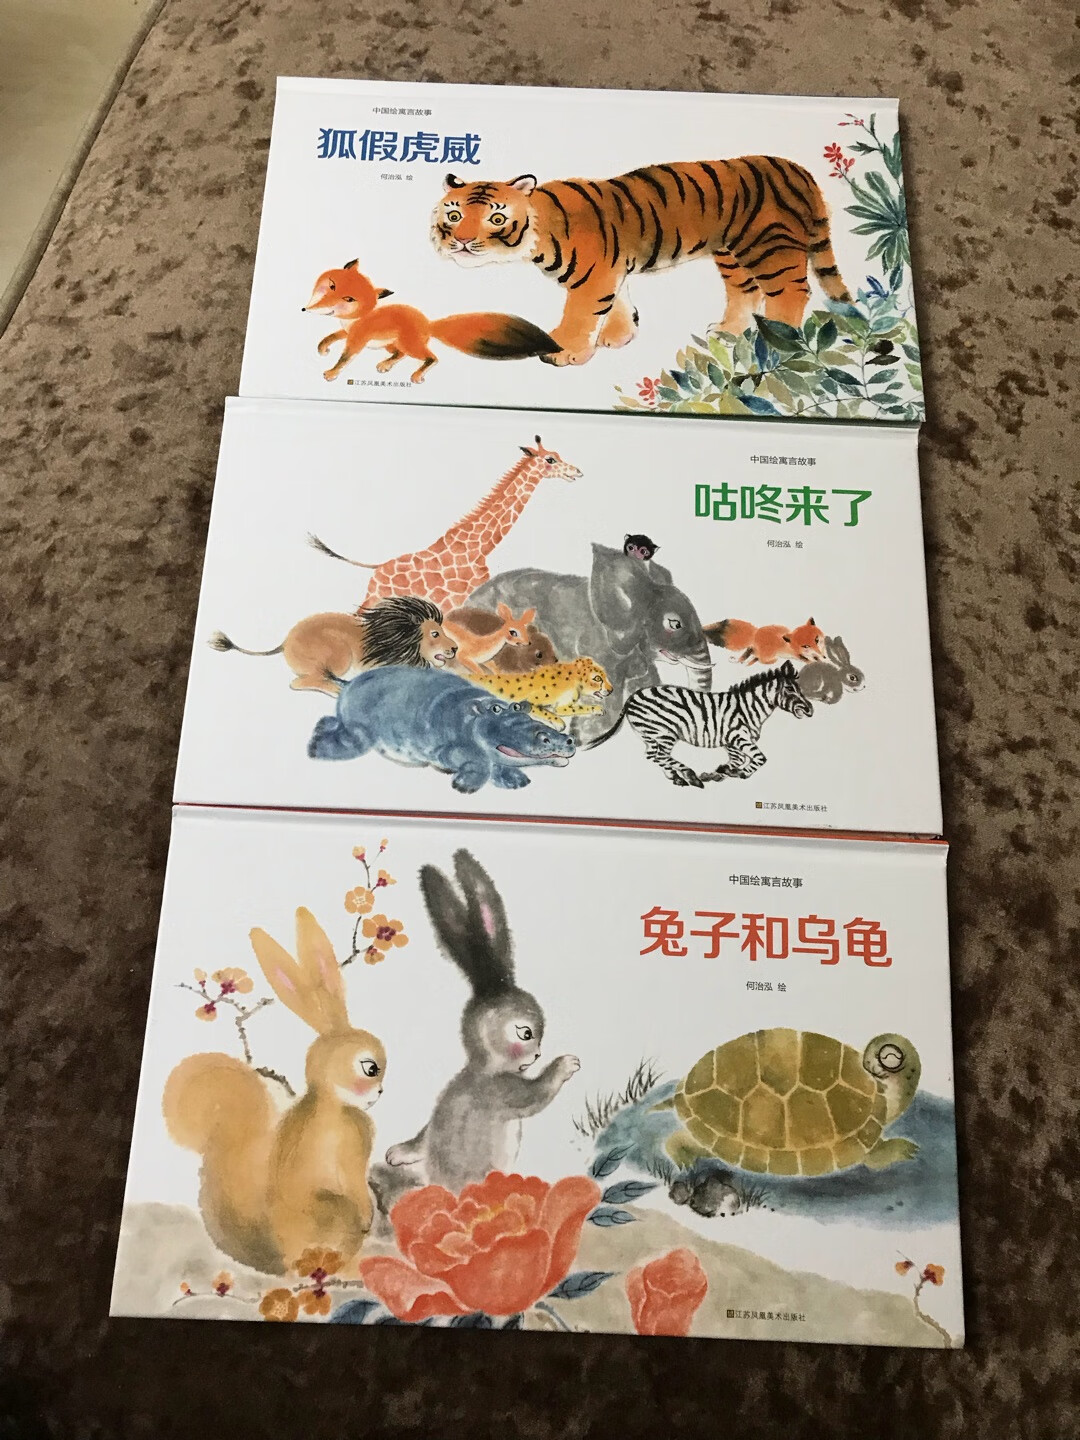 这套中国绘寓言故事很不错，很有中国风特色，故事内容读起来孩子也喜欢。喜欢在买东西，发货快品类多。